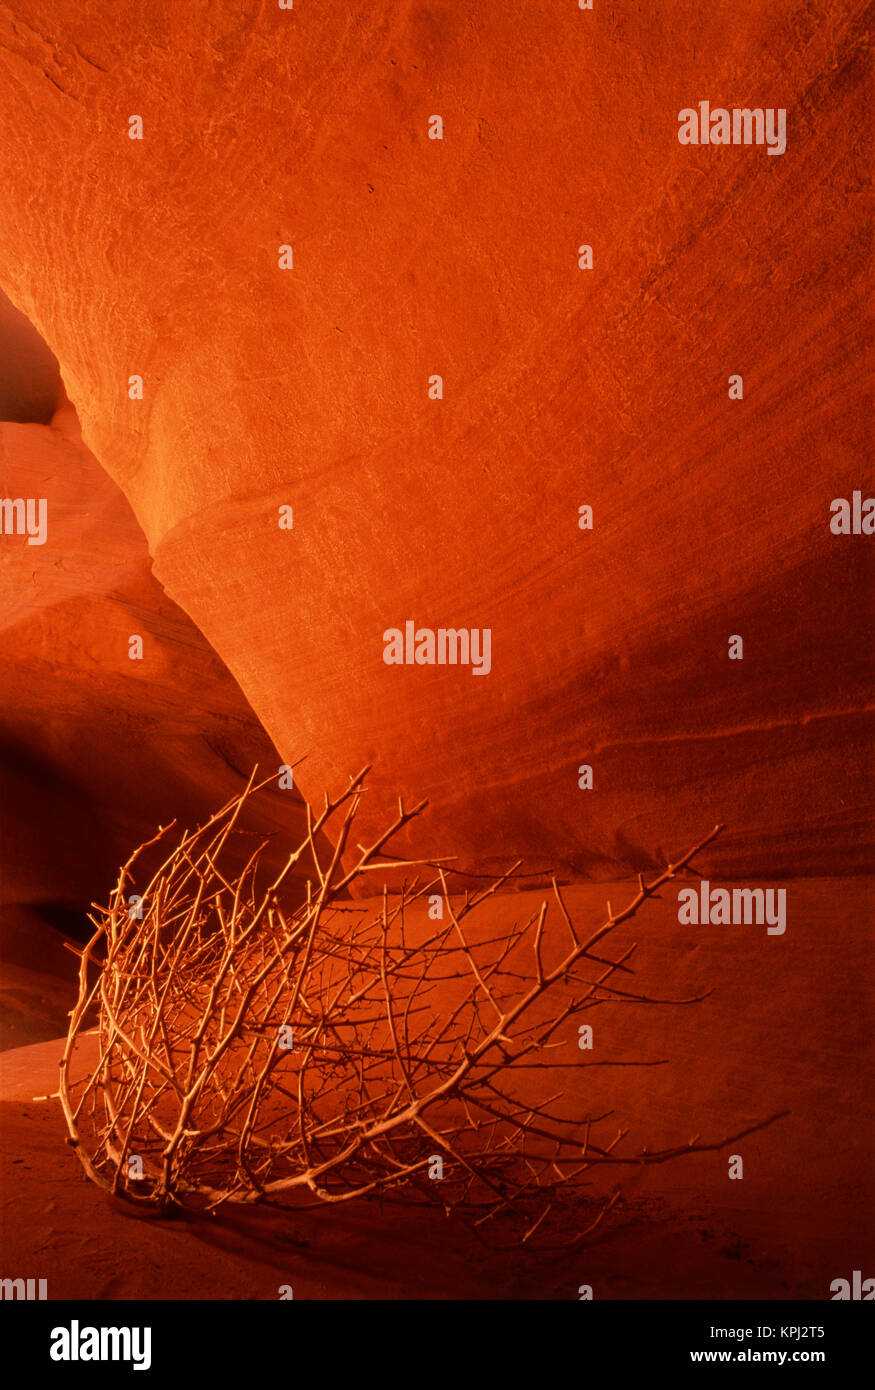 USA, Arizona, Page, Tumbleweed on ledge in antelope canyon (Large format sizes available) Stock Photo